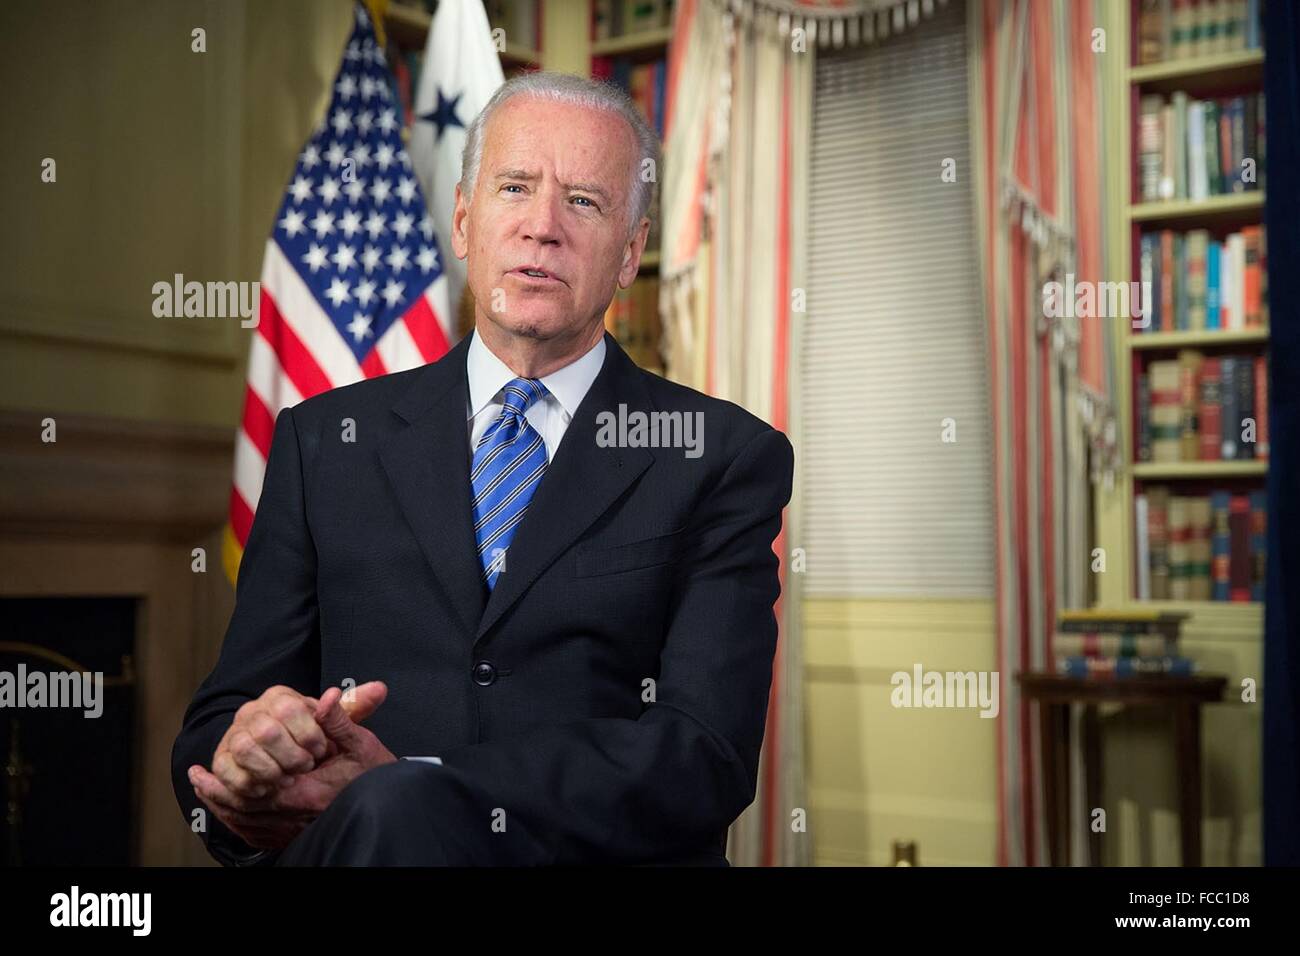 Le Vice-président américain Joe Biden fournit l'adresse de radio hebdomadaire sur la qualité pour agir contre le terrorisme, le 21 novembre 2015 à Washington, D.C. Banque D'Images